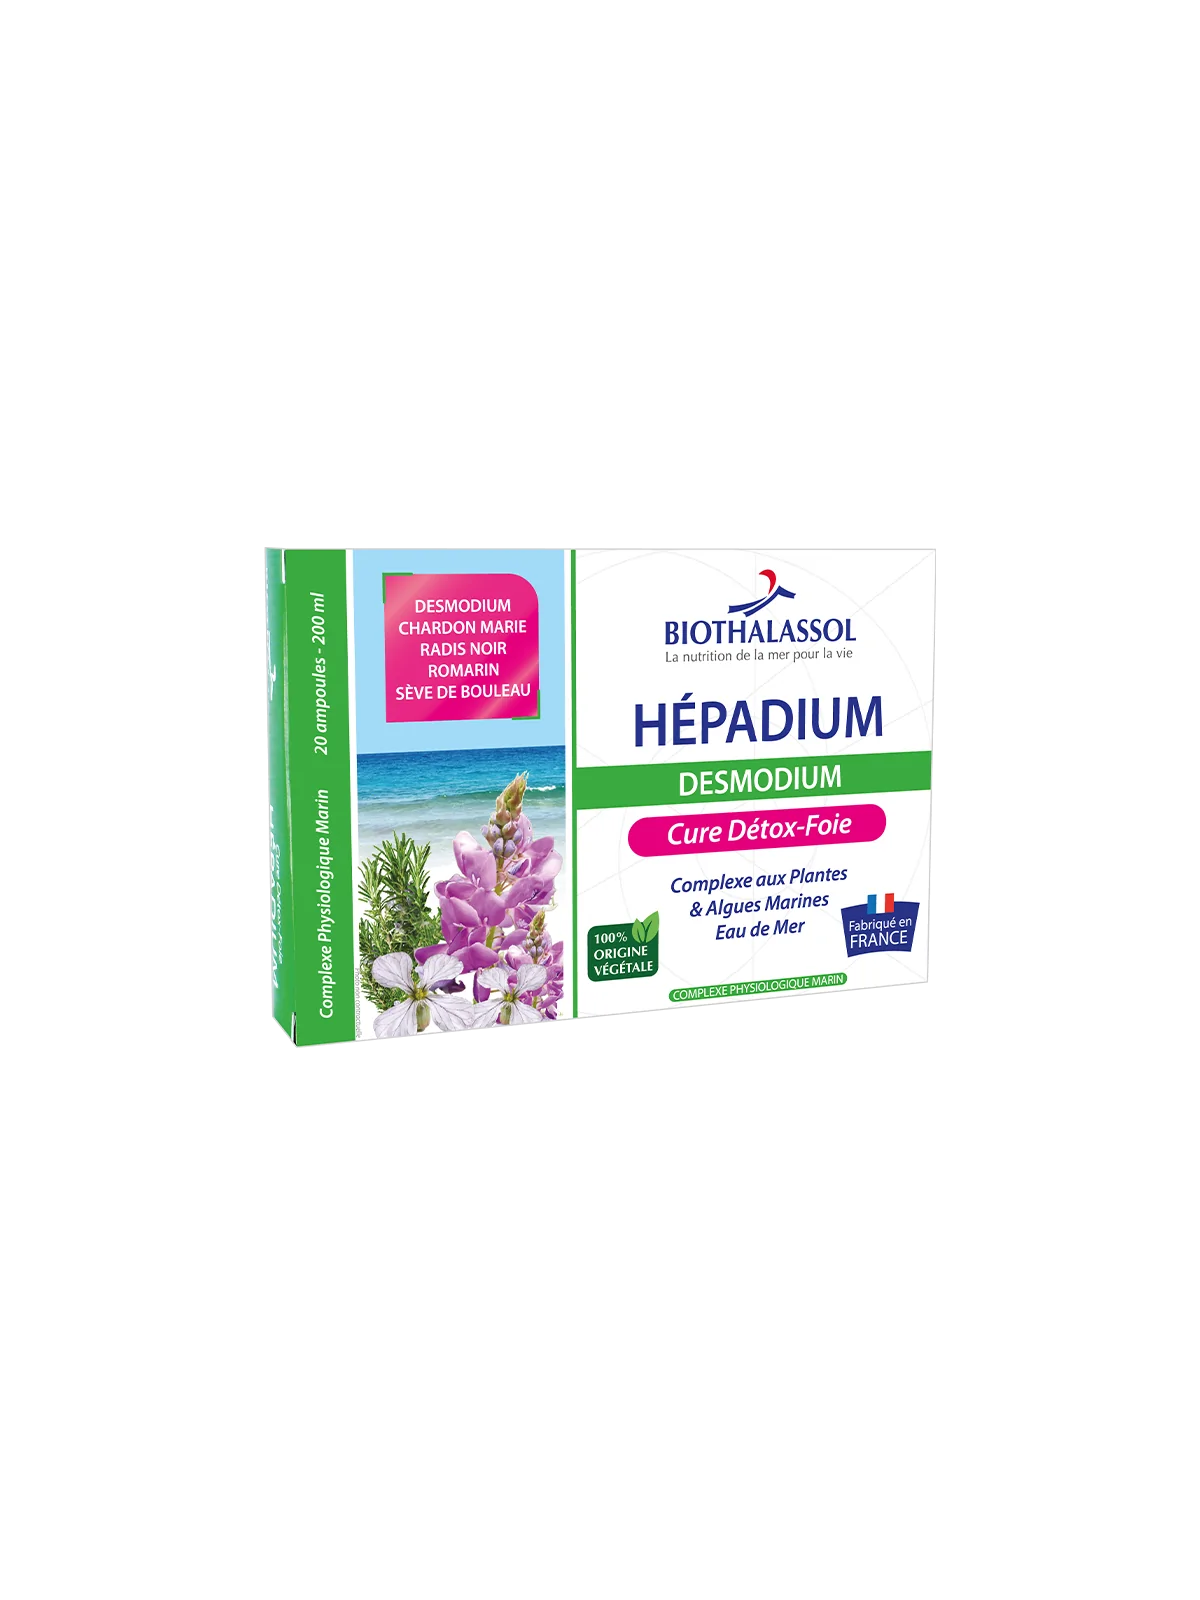 Hepadium Desmodium bio Biothalassol